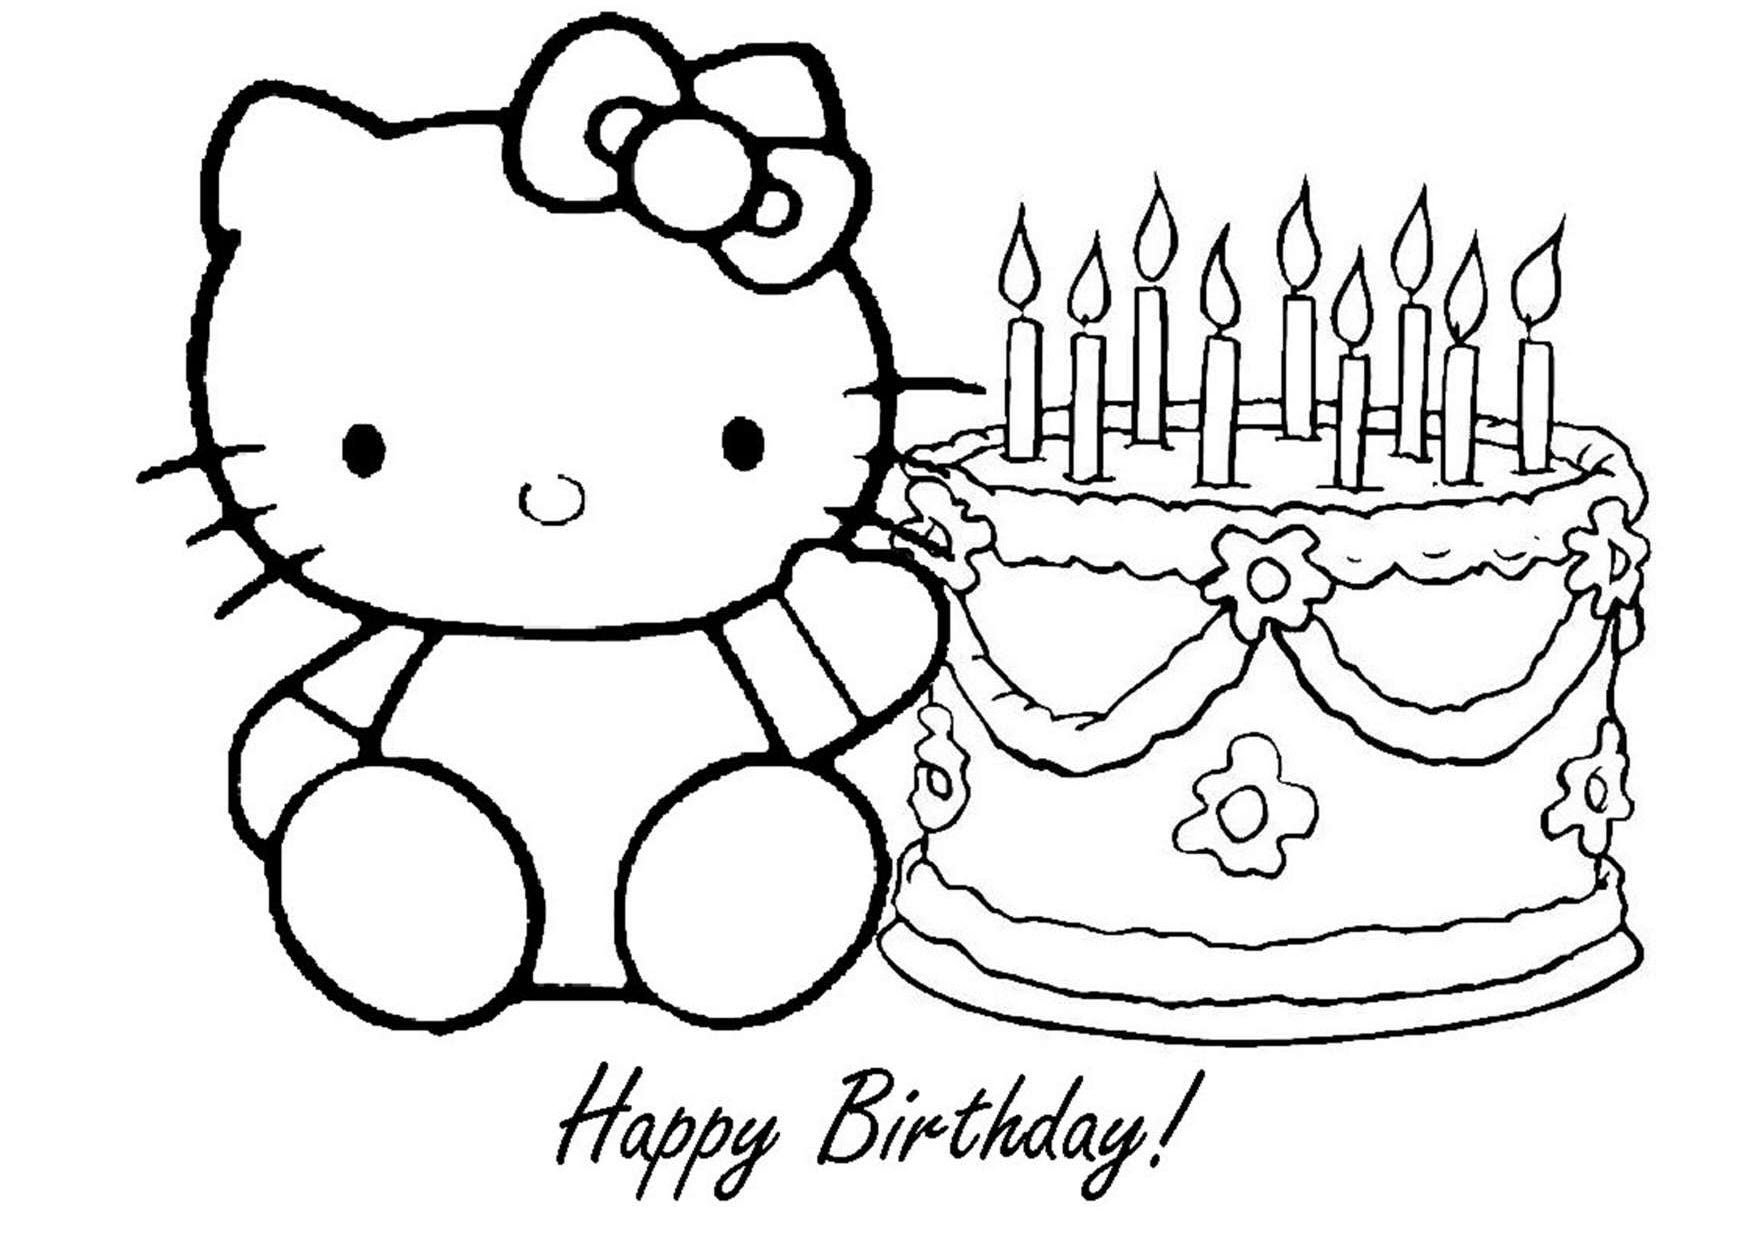 Рисовать рисунки на день рождения. Раскраска Хелло Китти с днем рождения. Раскраска "с днем рождения!". Раскраски для дьенрождене. Рескюунки на день рождения.